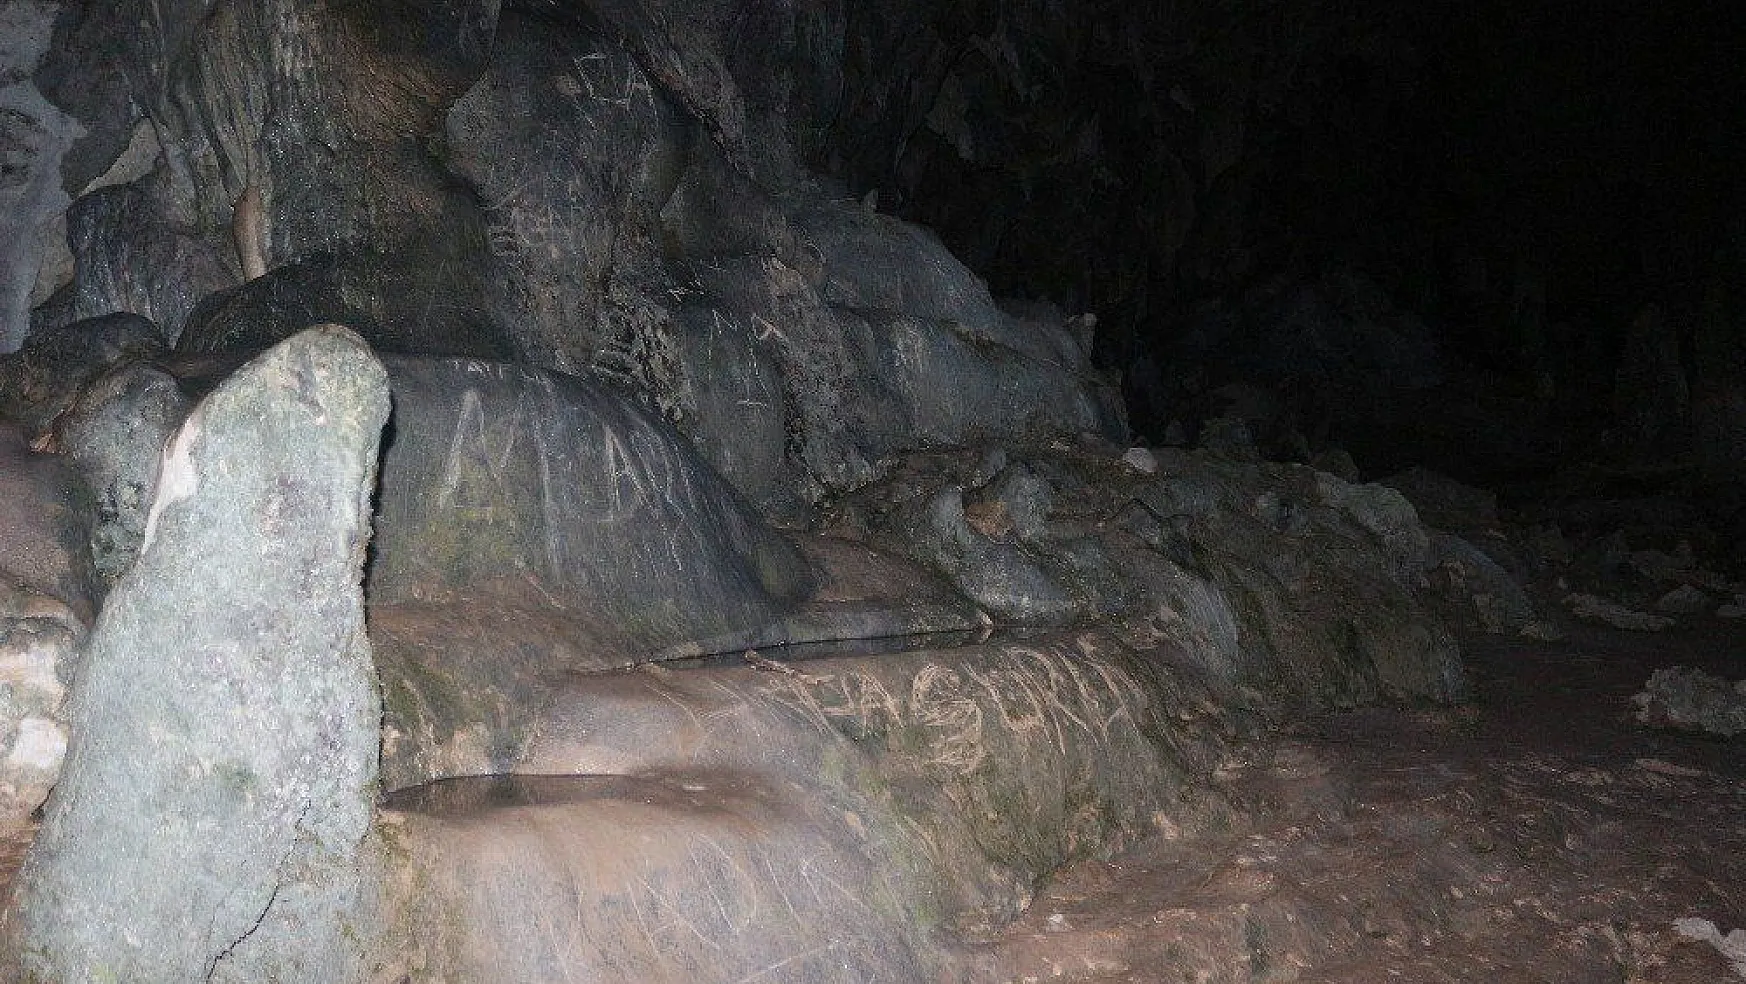 12 bin yıllık mağaranın duvarlarını tahrip ettiler